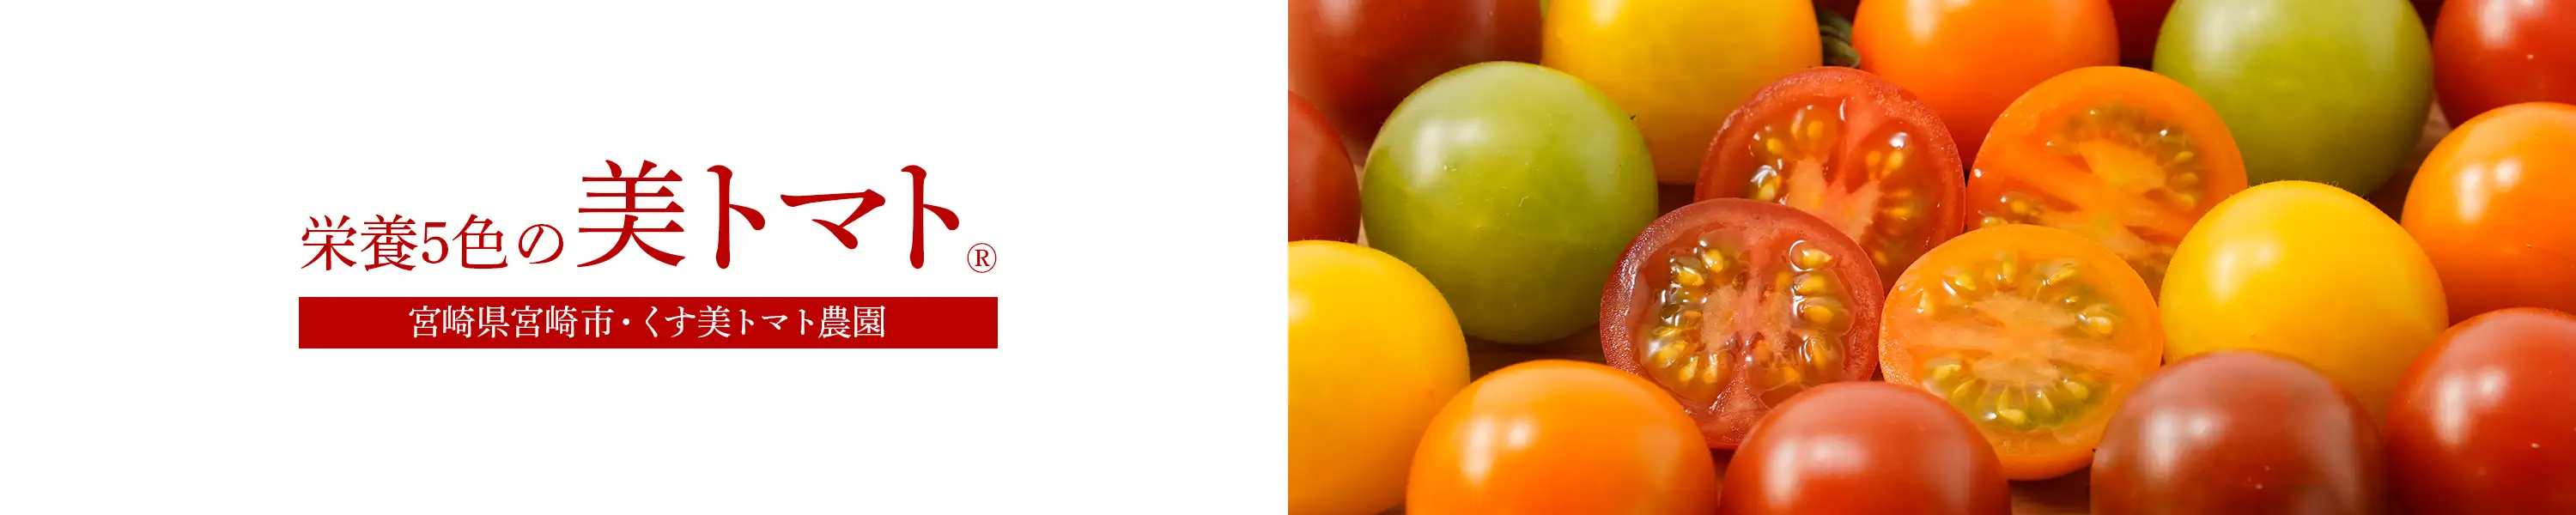 くす美トマト農園 栄養5色の「美トマト®」